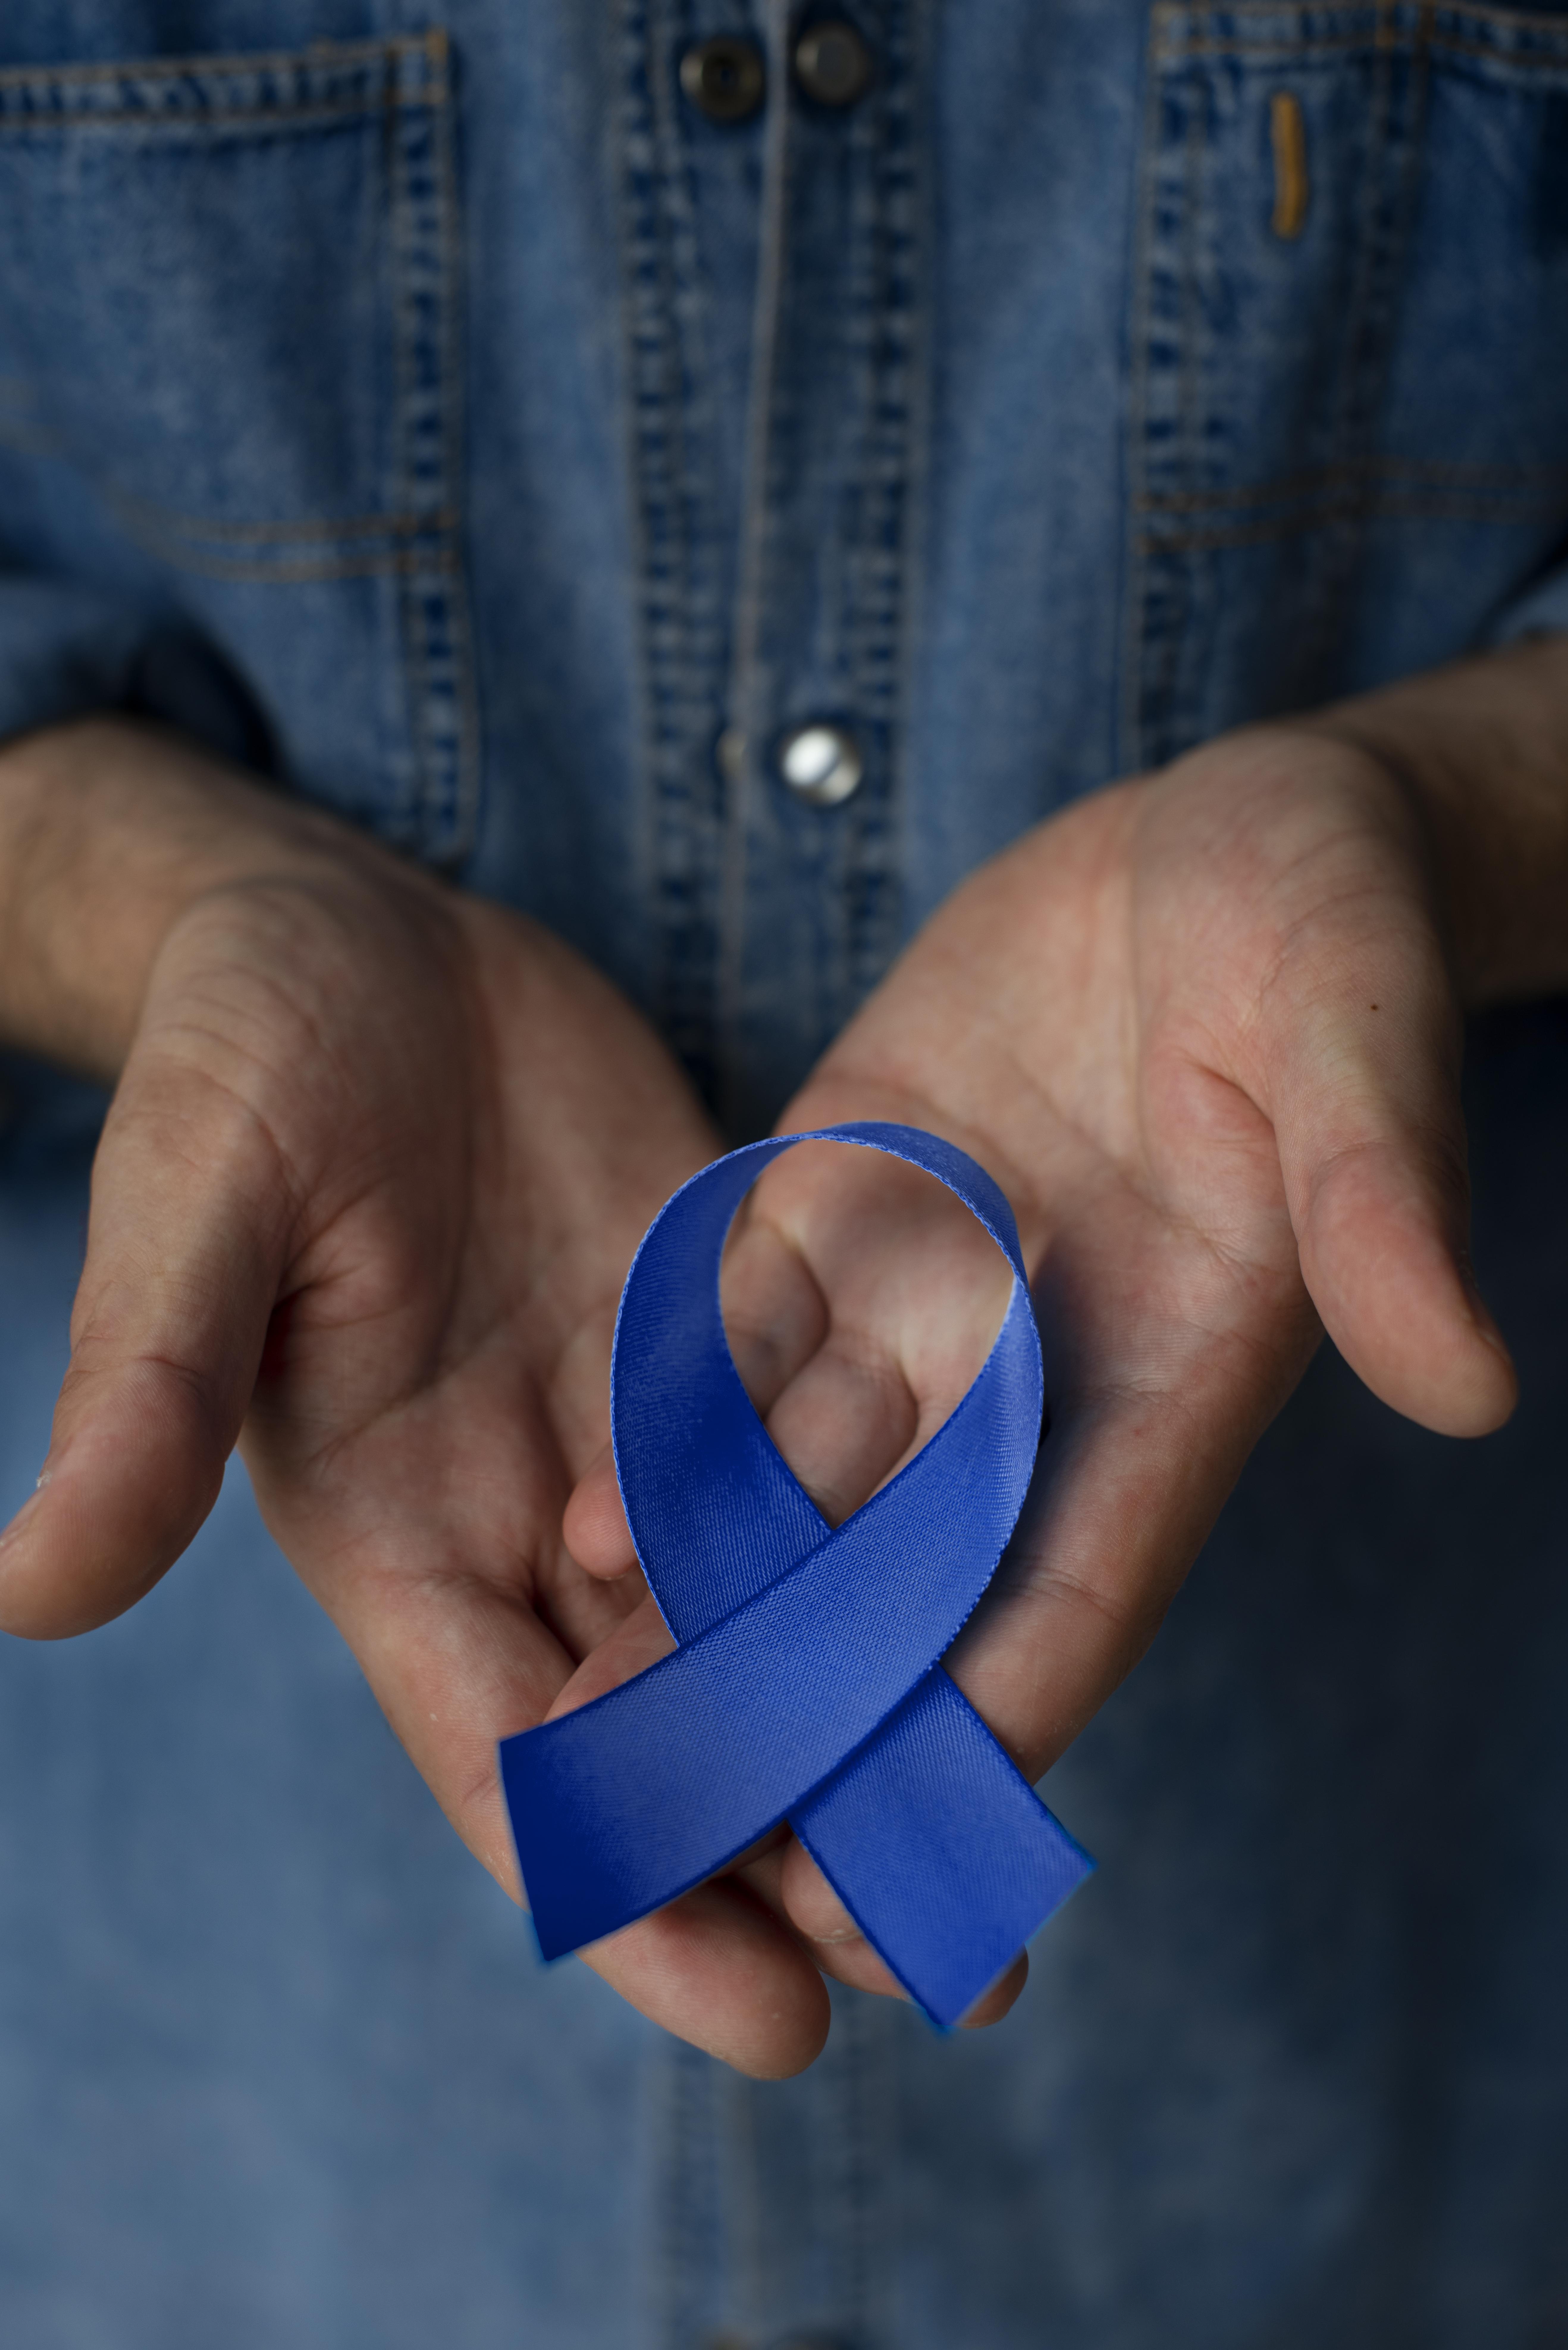 HSJosé reforça a importância da prevenção ao câncer de próstata